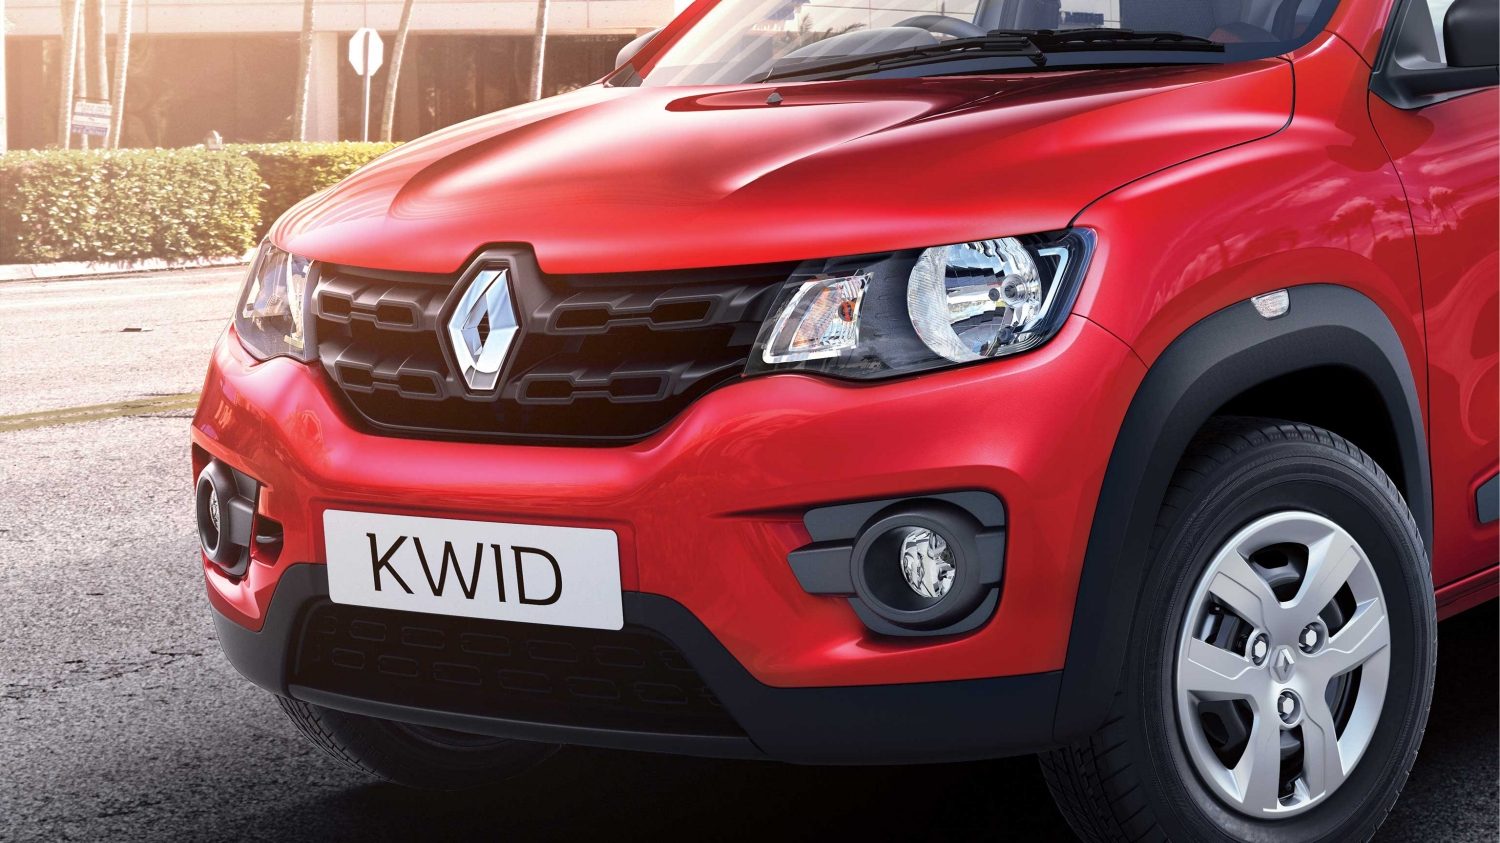 Bedah Tuntas Renault Kwid Crossover Murah Rasa Eropa Review Mobil